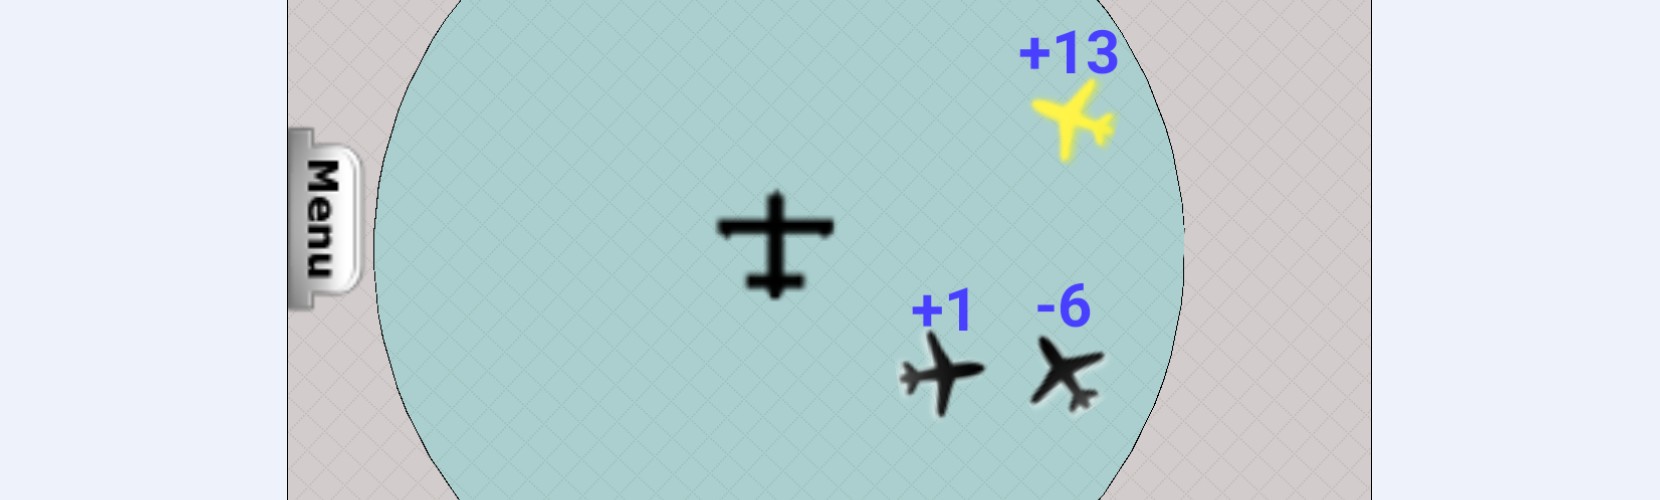 Réception trafic ADS-B + Flarm + Airtrackpro - Parametrage des perimetres de vol et des seuils de separation d'altitude